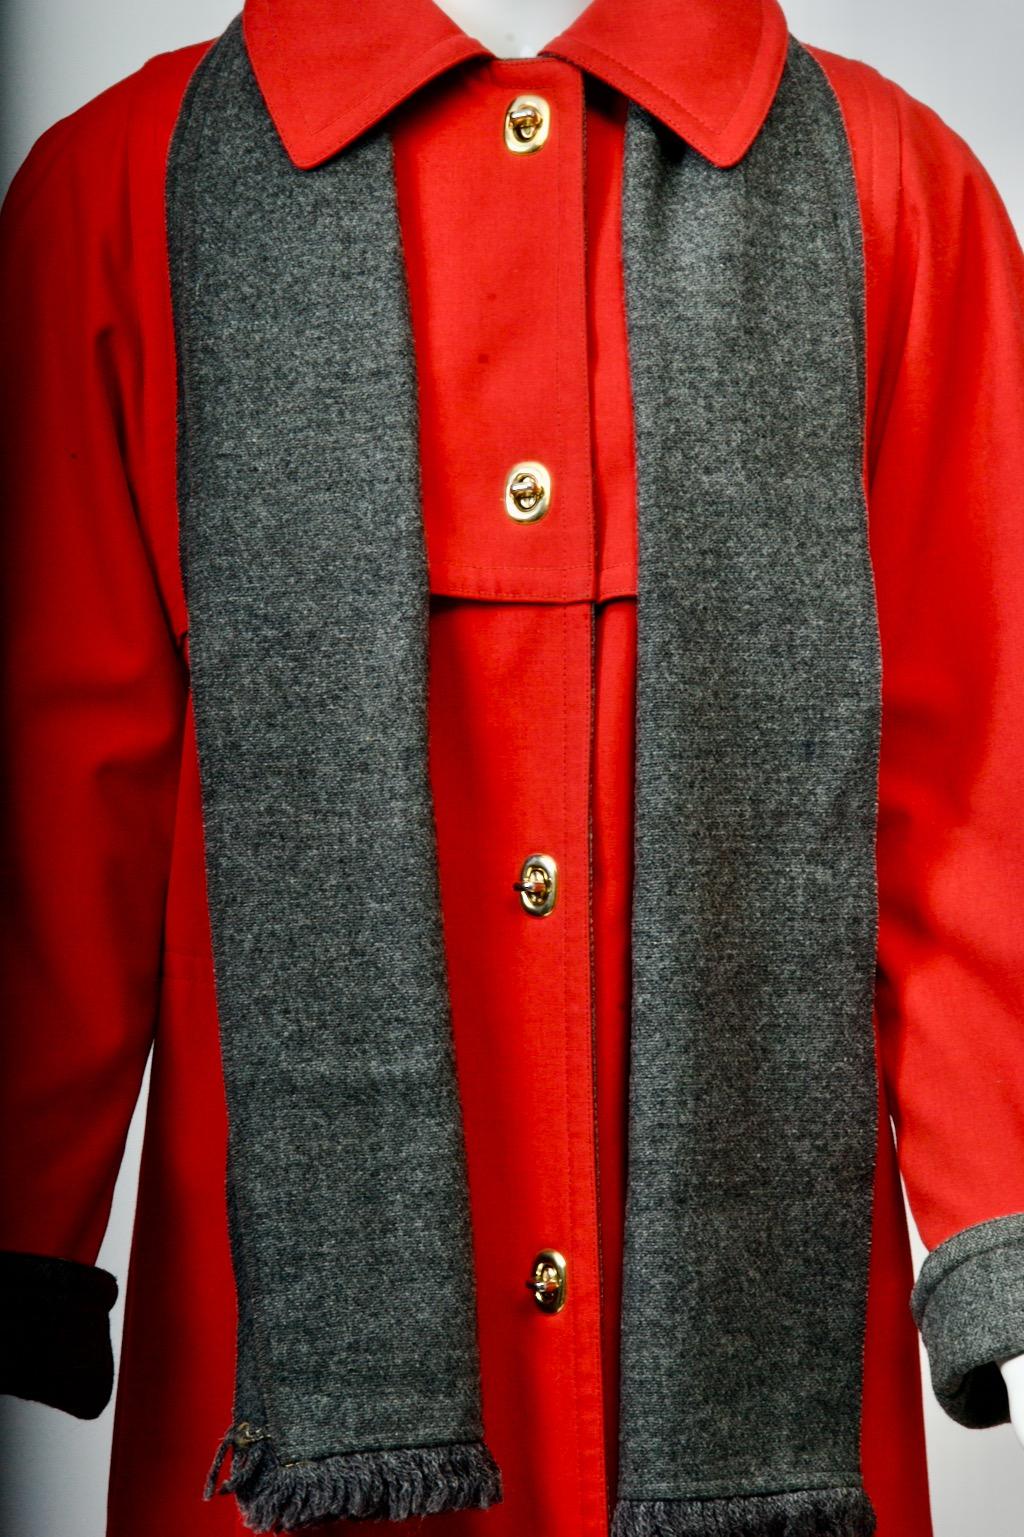 Manteau original de Bonnie C.I.C., datant des années 1970, en popeline rouge, doublé de laine anthracite, avec une écharpe en laine anthracite. Ce manteau est doté des fermetures à genouillère caractéristiques de Coates et d'empiècements sur le